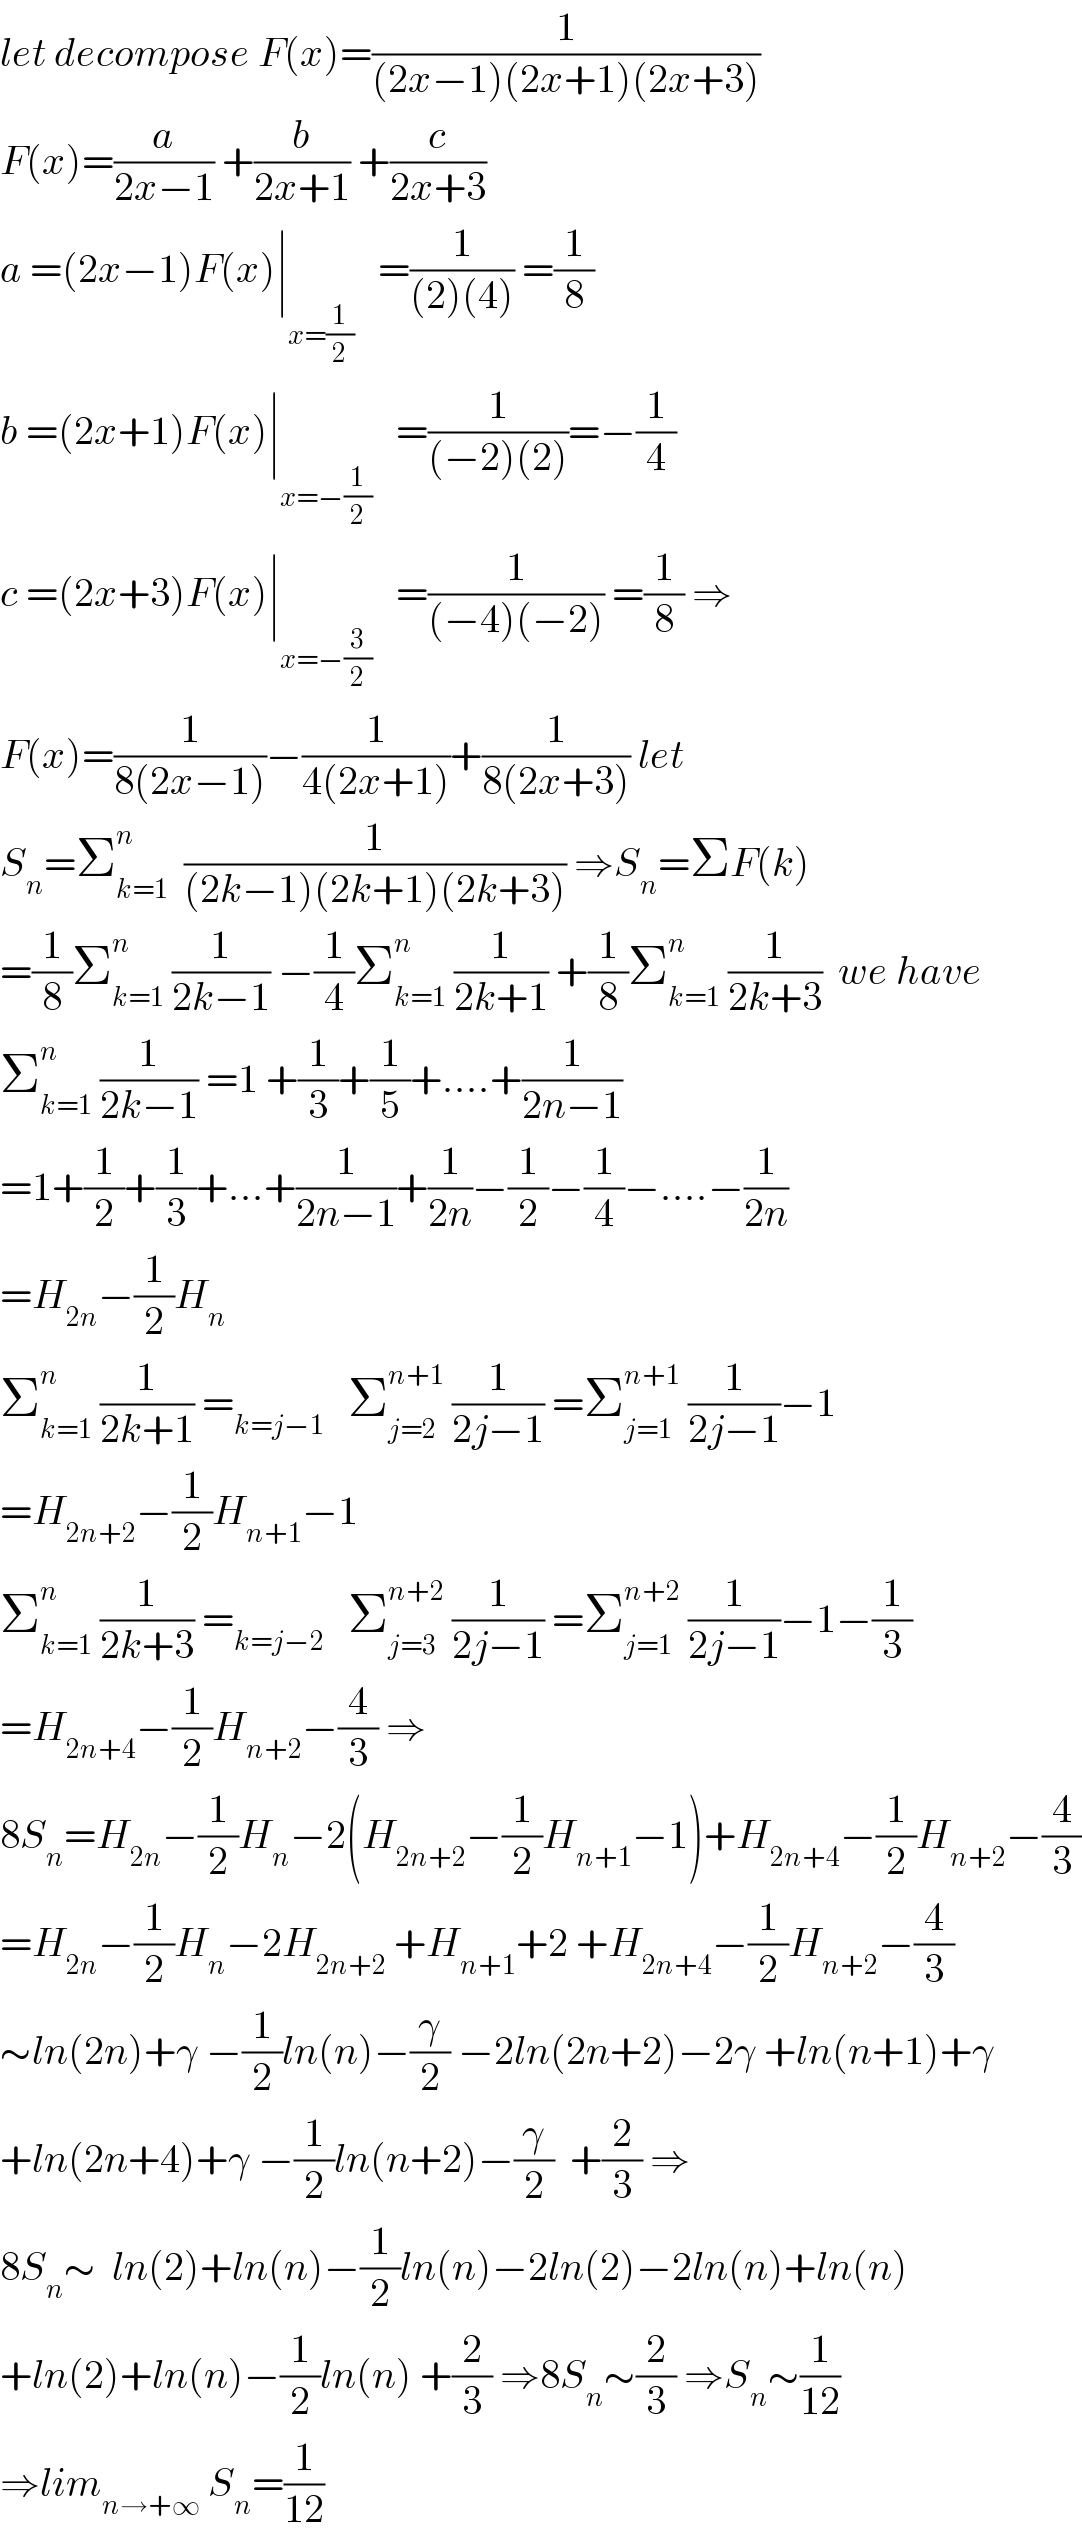 let decompose F(x)=(1/((2x−1)(2x+1)(2x+3)))  F(x)=(a/(2x−1)) +(b/(2x+1)) +(c/(2x+3))  a =(2x−1)F(x)∣_(x=(1/2))    =(1/((2)(4))) =(1/8)  b =(2x+1)F(x)∣_(x=−(1/2))    =(1/((−2)(2)))=−(1/4)  c =(2x+3)F(x)∣_(x=−(3/2))    =(1/((−4)(−2))) =(1/8) ⇒  F(x)=(1/(8(2x−1)))−(1/(4(2x+1)))+(1/(8(2x+3))) let  S_n =Σ_(k=1) ^(n )   (1/((2k−1)(2k+1)(2k+3))) ⇒S_n =ΣF(k)  =(1/8)Σ_(k=1) ^n  (1/(2k−1)) −(1/4)Σ_(k=1) ^n  (1/(2k+1)) +(1/8)Σ_(k=1) ^n  (1/(2k+3))  we have  Σ_(k=1) ^n  (1/(2k−1)) =1 +(1/3)+(1/5)+....+(1/(2n−1))  =1+(1/2)+(1/3)+...+(1/(2n−1))+(1/(2n))−(1/2)−(1/4)−....−(1/(2n))  =H_(2n) −(1/2)H_n   Σ_(k=1) ^n  (1/(2k+1)) =_(k=j−1)    Σ_(j=2) ^(n+1)  (1/(2j−1)) =Σ_(j=1) ^(n+1)  (1/(2j−1))−1  =H_(2n+2) −(1/2)H_(n+1) −1  Σ_(k=1) ^n  (1/(2k+3)) =_(k=j−2)    Σ_(j=3) ^(n+2)  (1/(2j−1)) =Σ_(j=1) ^(n+2)  (1/(2j−1))−1−(1/3)  =H_(2n+4) −(1/2)H_(n+2) −(4/3) ⇒  8S_n =H_(2n) −(1/2)H_n −2(H_(2n+2) −(1/2)H_(n+1) −1)+H_(2n+4) −(1/2)H_(n+2) −(4/3)  =H_(2n) −(1/2)H_n −2H_(2n+2)  +H_(n+1) +2 +H_(2n+4) −(1/2)H_(n+2) −(4/3)  ∼ln(2n)+γ −(1/2)ln(n)−(γ/2) −2ln(2n+2)−2γ +ln(n+1)+γ  +ln(2n+4)+γ −(1/2)ln(n+2)−(γ/2)  +(2/3) ⇒  8S_n ∼  ln(2)+ln(n)−(1/2)ln(n)−2ln(2)−2ln(n)+ln(n)  +ln(2)+ln(n)−(1/2)ln(n) +(2/3) ⇒8S_n ∼(2/3) ⇒S_n ∼(1/(12))  ⇒lim_(n→+∞)  S_n =(1/(12))  